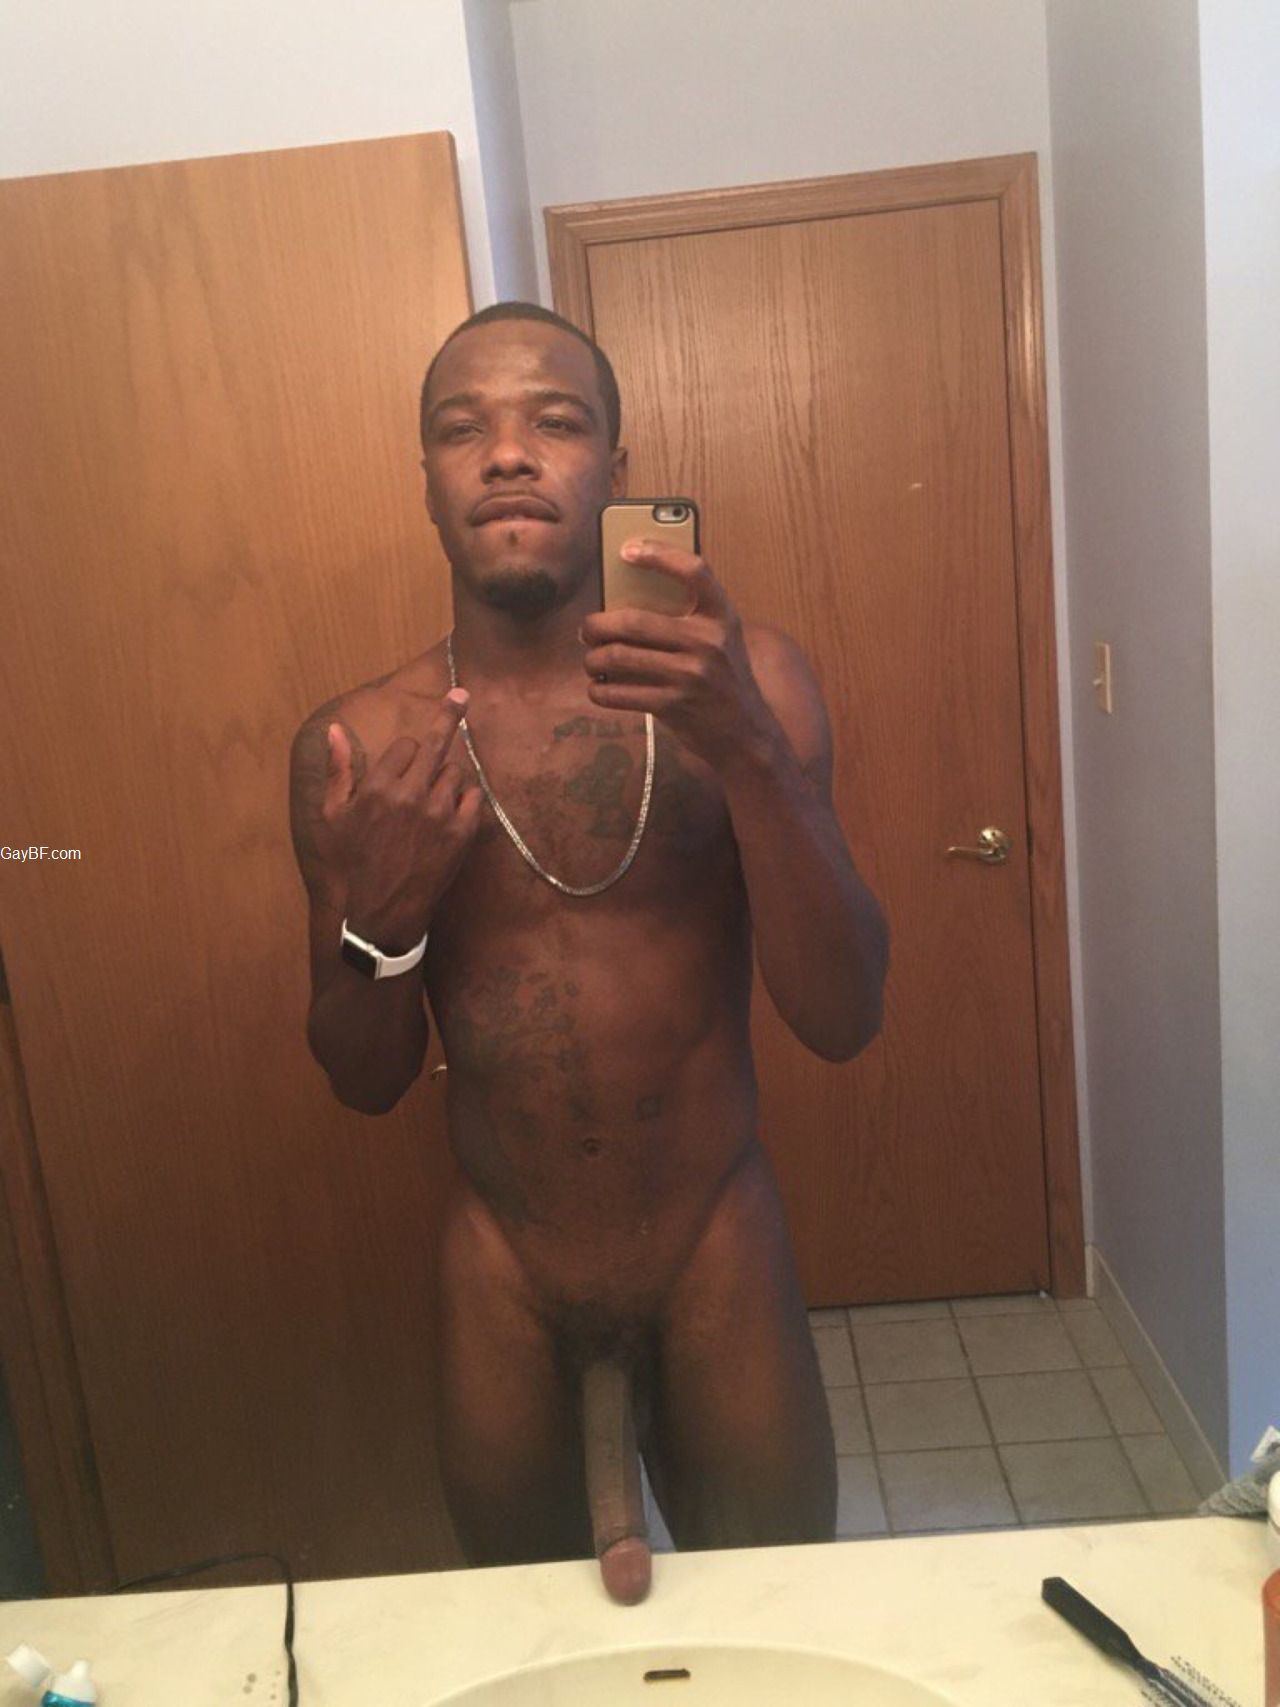 big dick selfie cumming cock